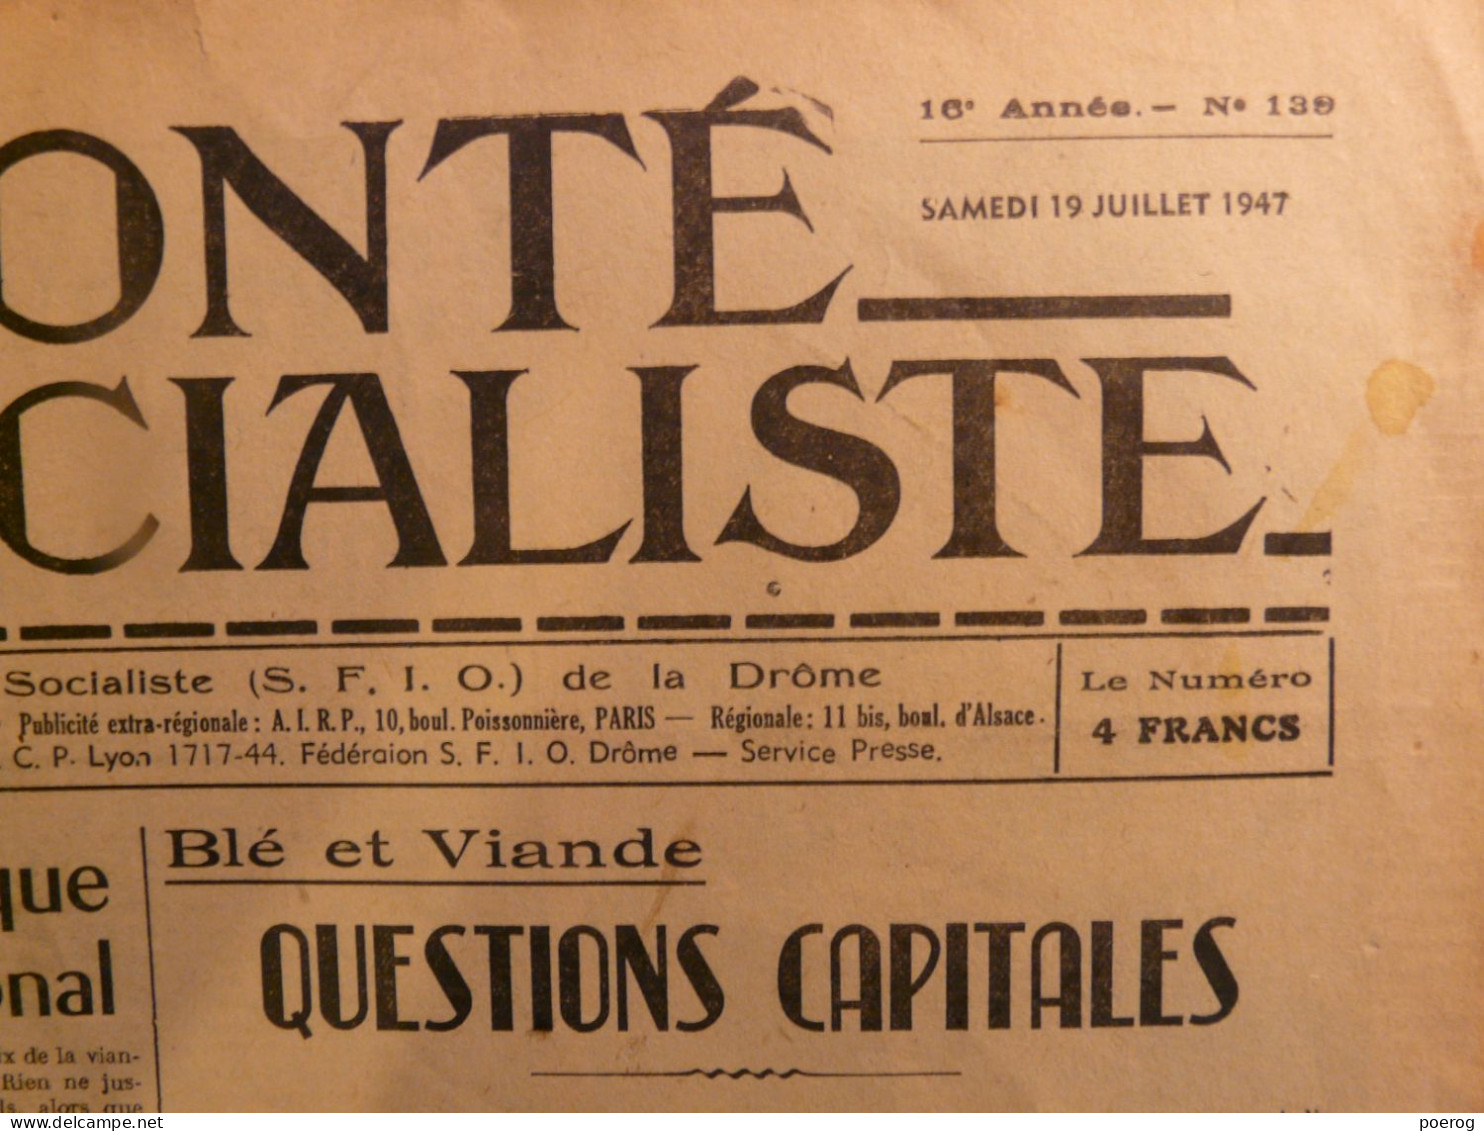 LA VOLONTE SOCIALISTE Du 19 JUILLET 1947 - BLE ET VIANDE QUESTIONS CAPITALES - SFIO DE LA DROME - SYNDICALISME - Allgemeine Literatur